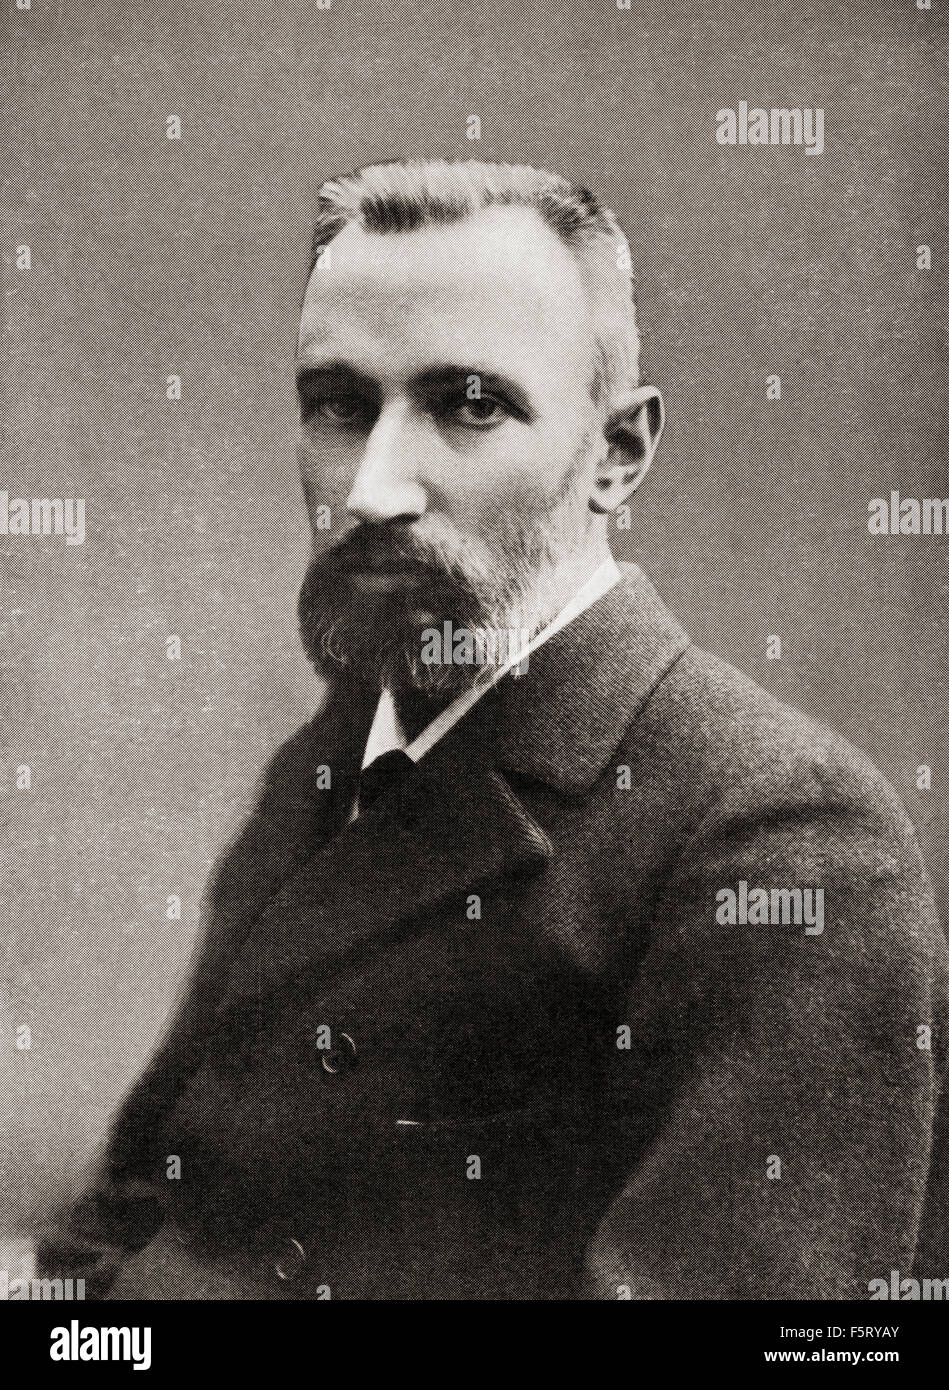 Pierre Curie, 1859 – 1906.  Französischer Physiker, ein Pionier in der Kristallographie, Magnetismus, Piezoelektrizität und Radioaktivität. Gewinner des 1903 den Nobelpreis für Physik. Stockfoto